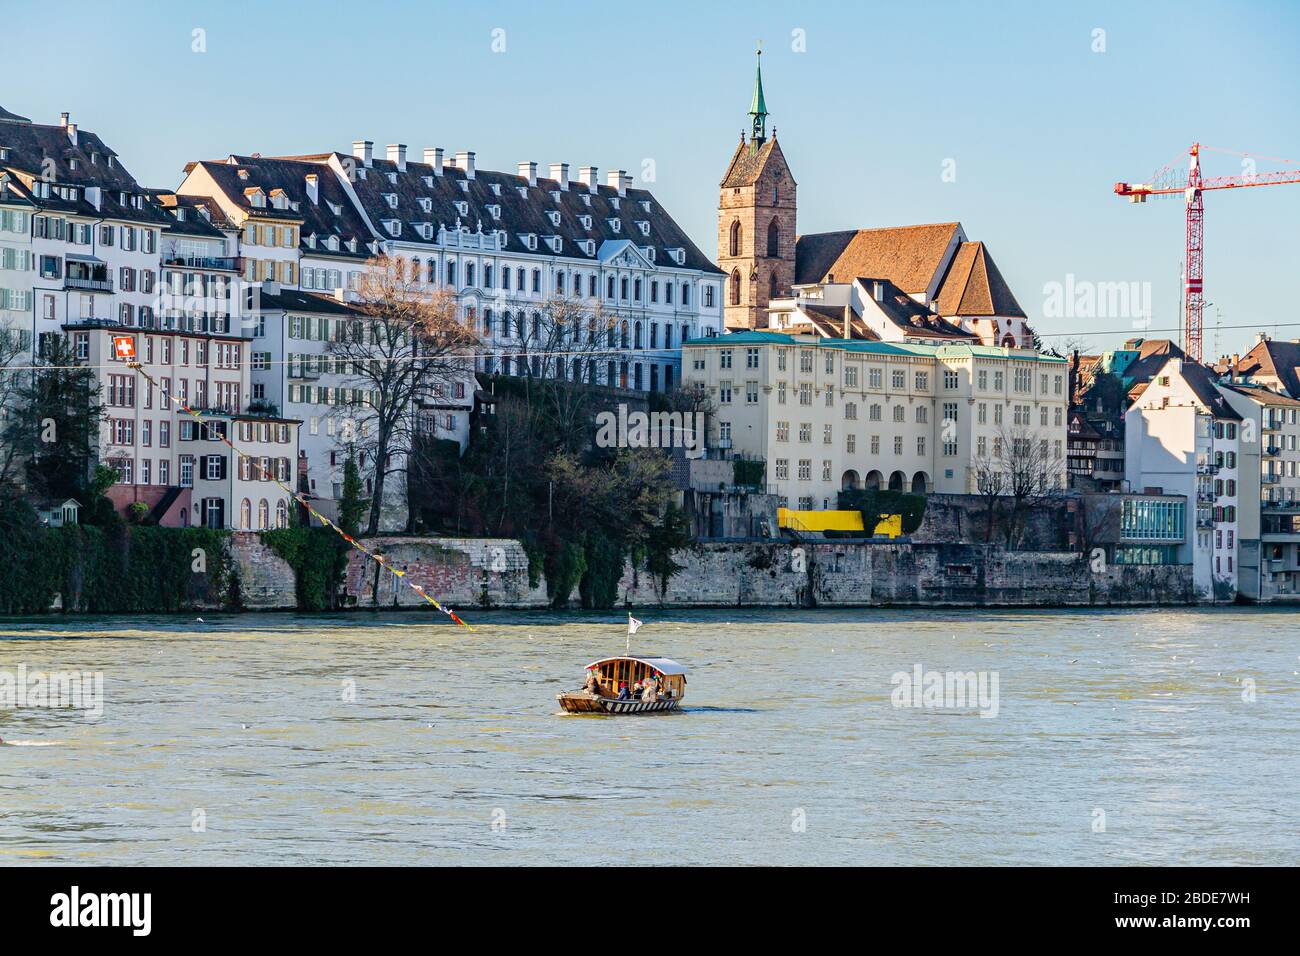 Eine von vier Seilfähren, die im Zentrum von Basel den Rhein überqueren, mit dem Münster/Dom dahinter. Basel, Schweiz. Februar 2020. Stockfoto